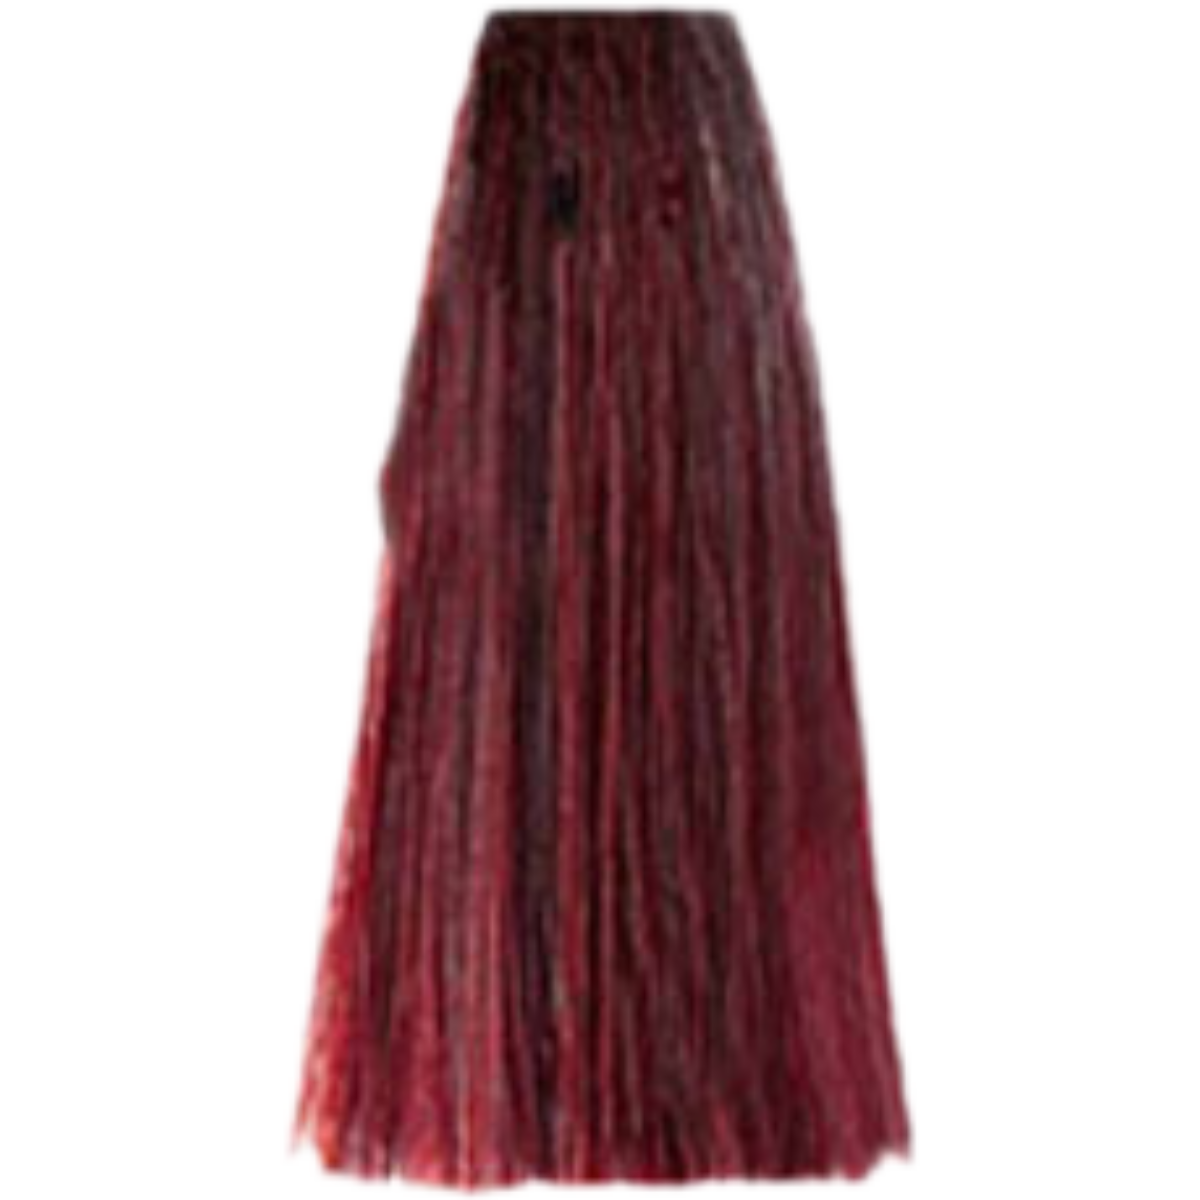 צבע שיער 6.66 DARK INTENSE RED BLONDE פארמויטה FarmaVita צבע לשיער 100 גרם